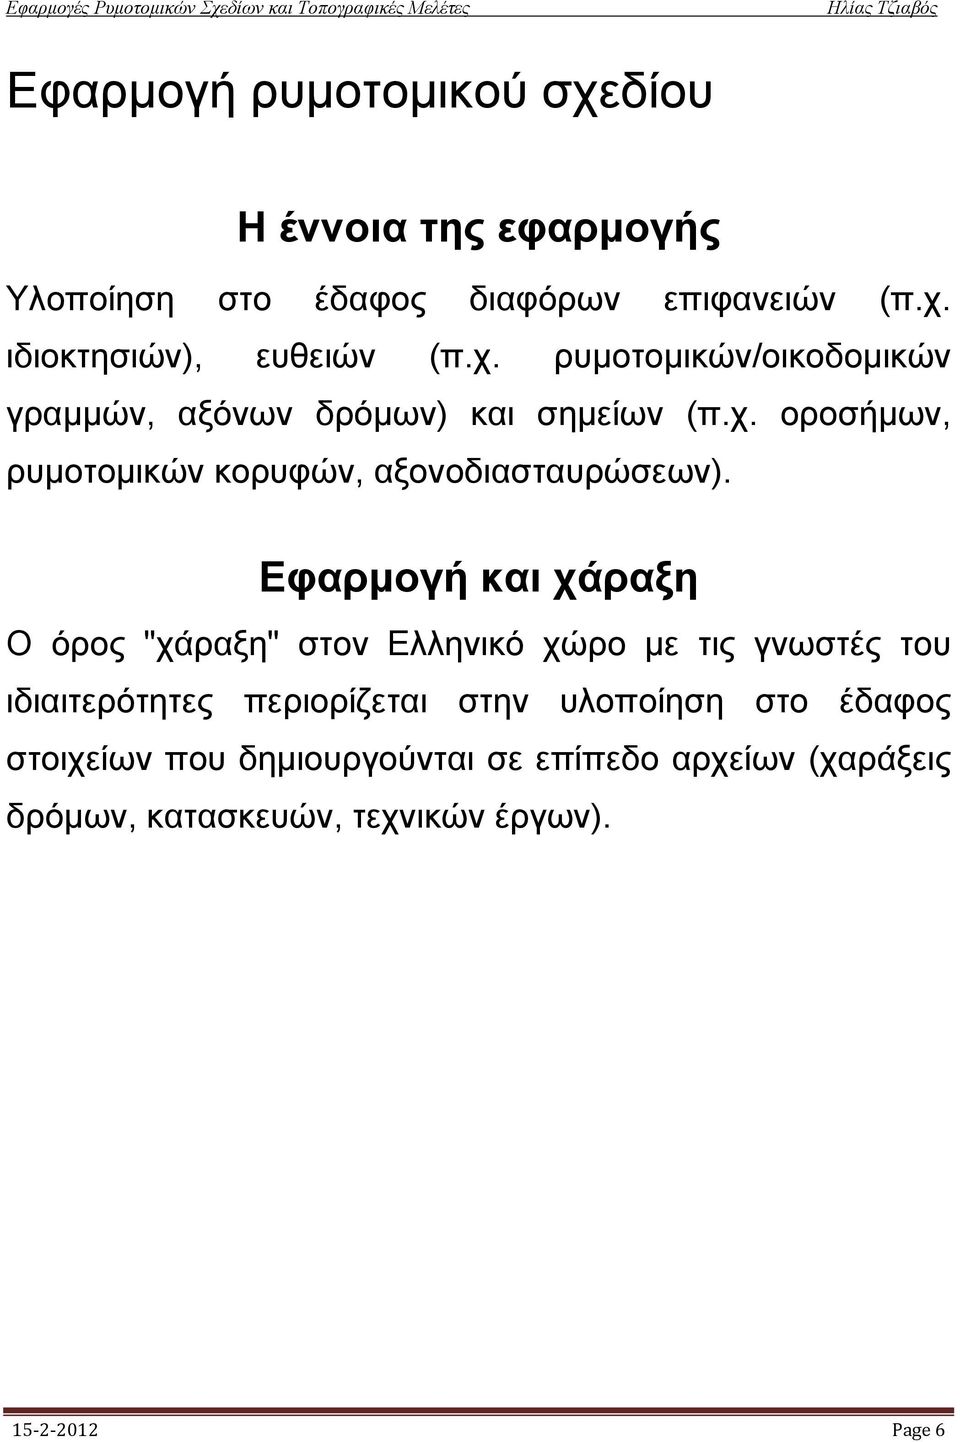 Εφαρμογή και χάραξη O όρος "χάραξη" στον Eλληνικό χώρο με τις γνωστές του ιδιαιτερότητες περιορίζεται στην υλοποίηση στο